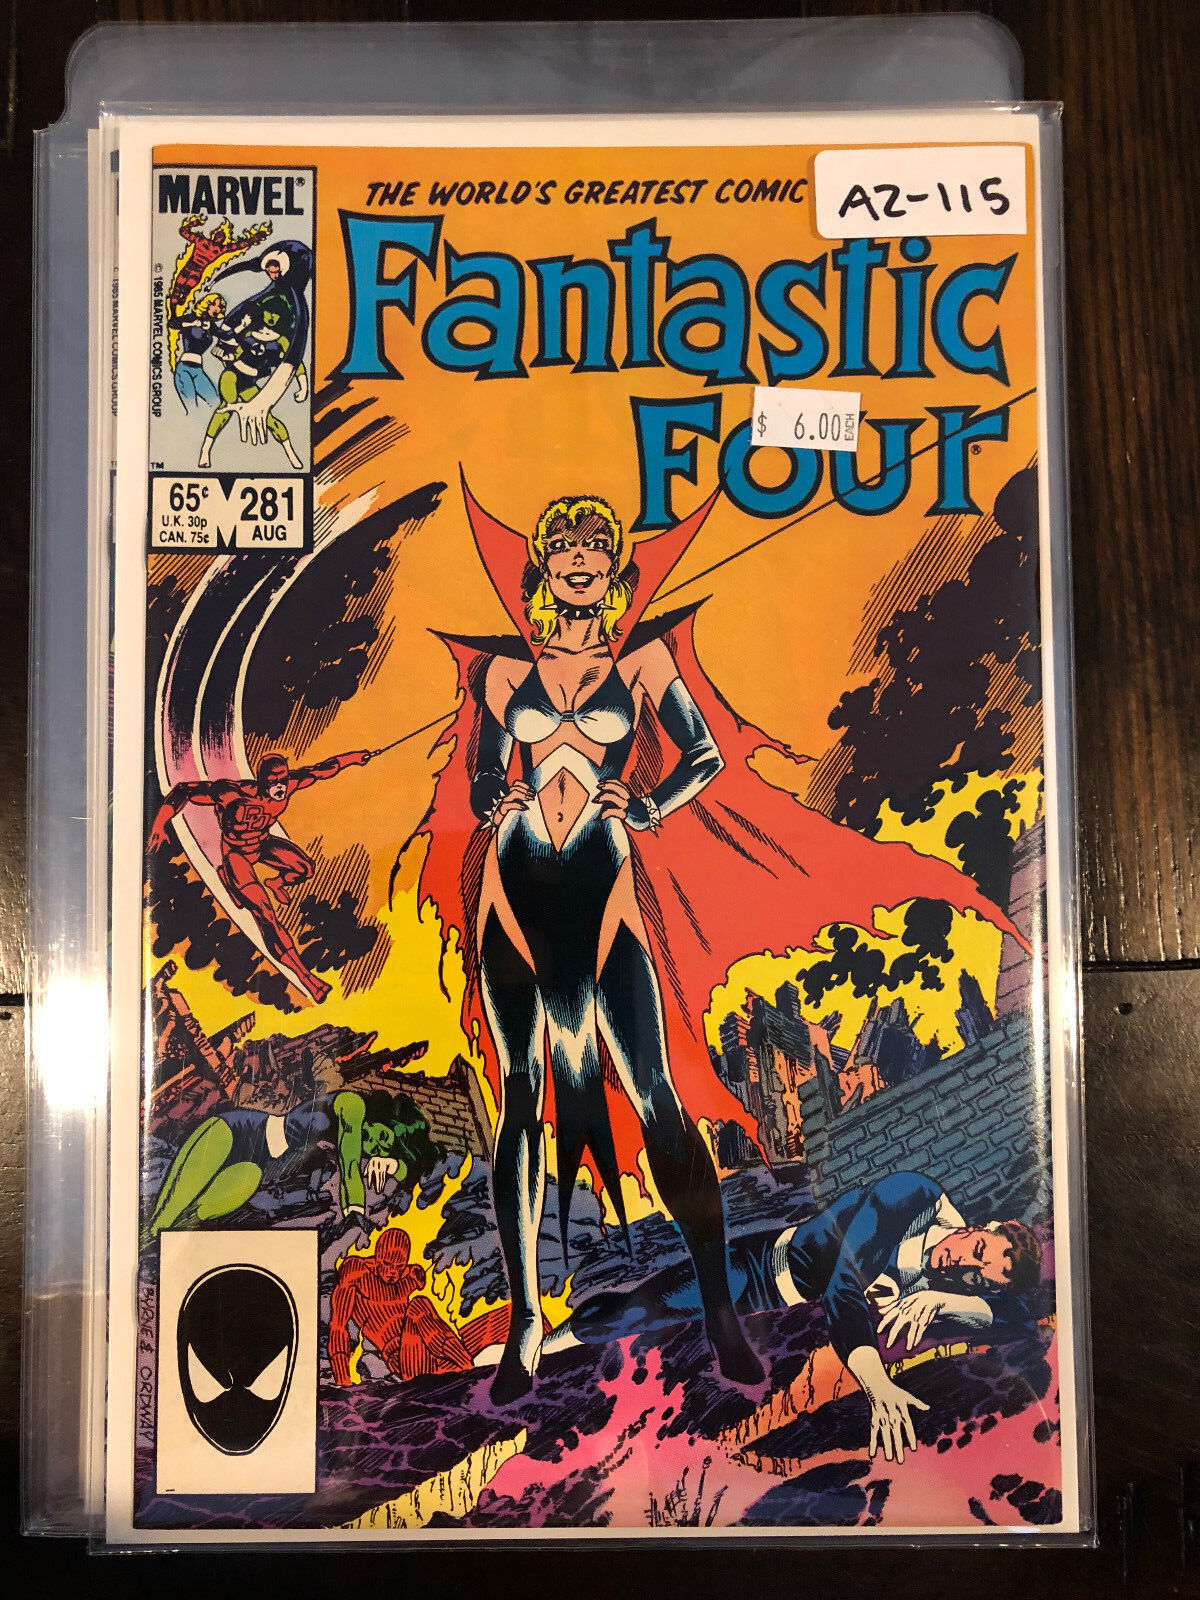 Fantastic Four vol.1 #281 1985 High Grade Marvel Comic Book A2-115